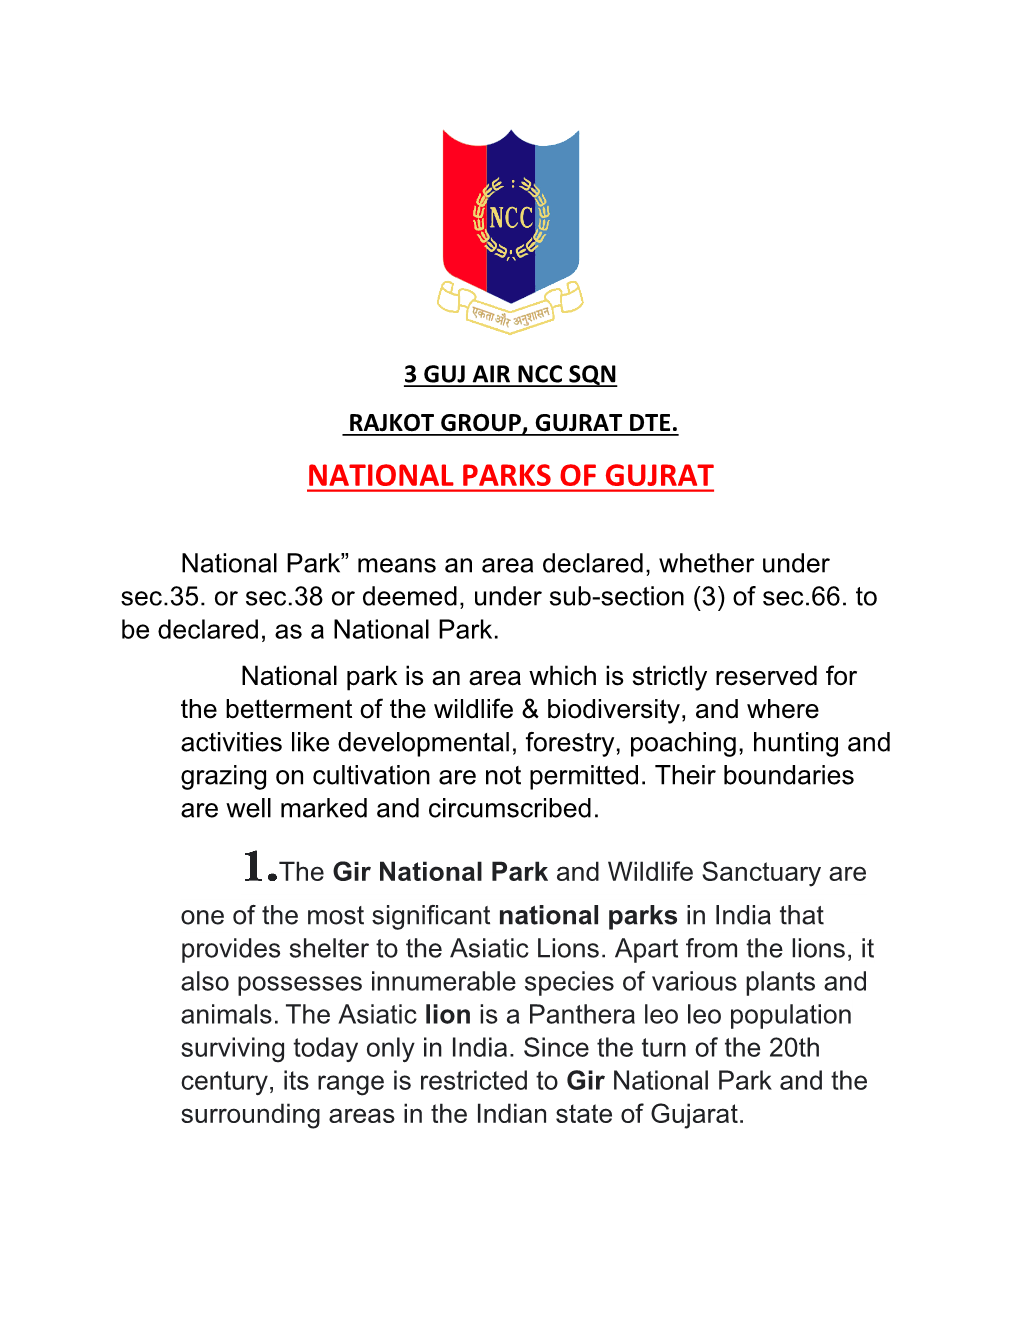 National Parks of Gujrat